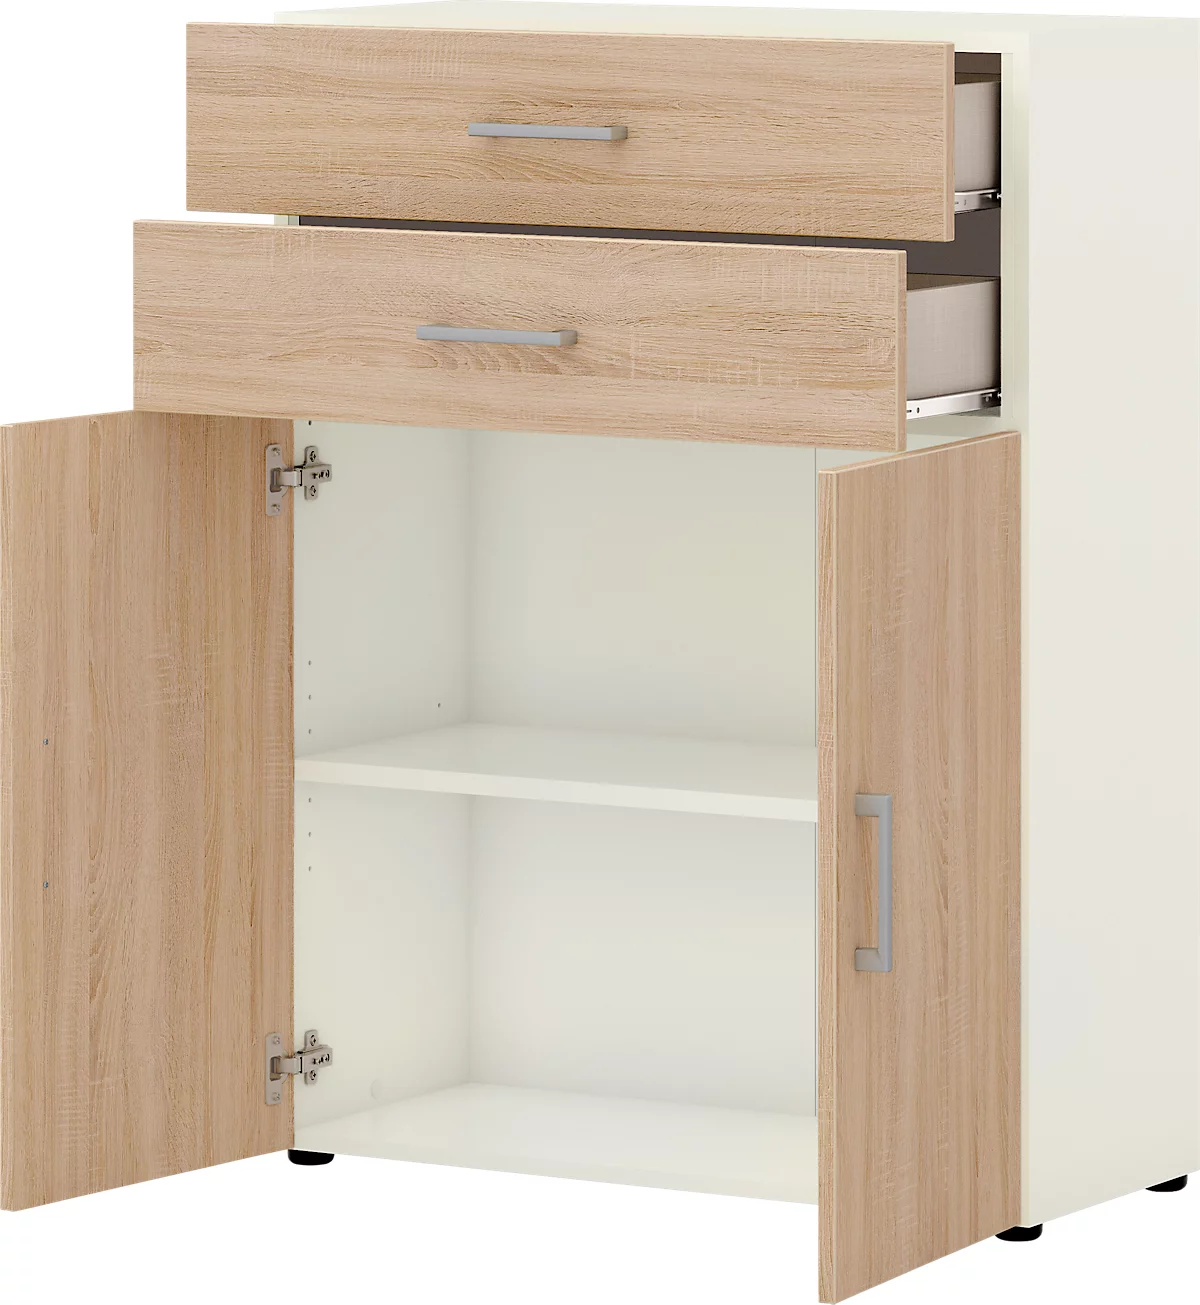 Bürokommode TEMPIO, aus Holz, 2 Türen, 2 Schubkästen, 3 OH, B 800 x T 340 x H 1070 mm, weiss/Sonoma Eiche